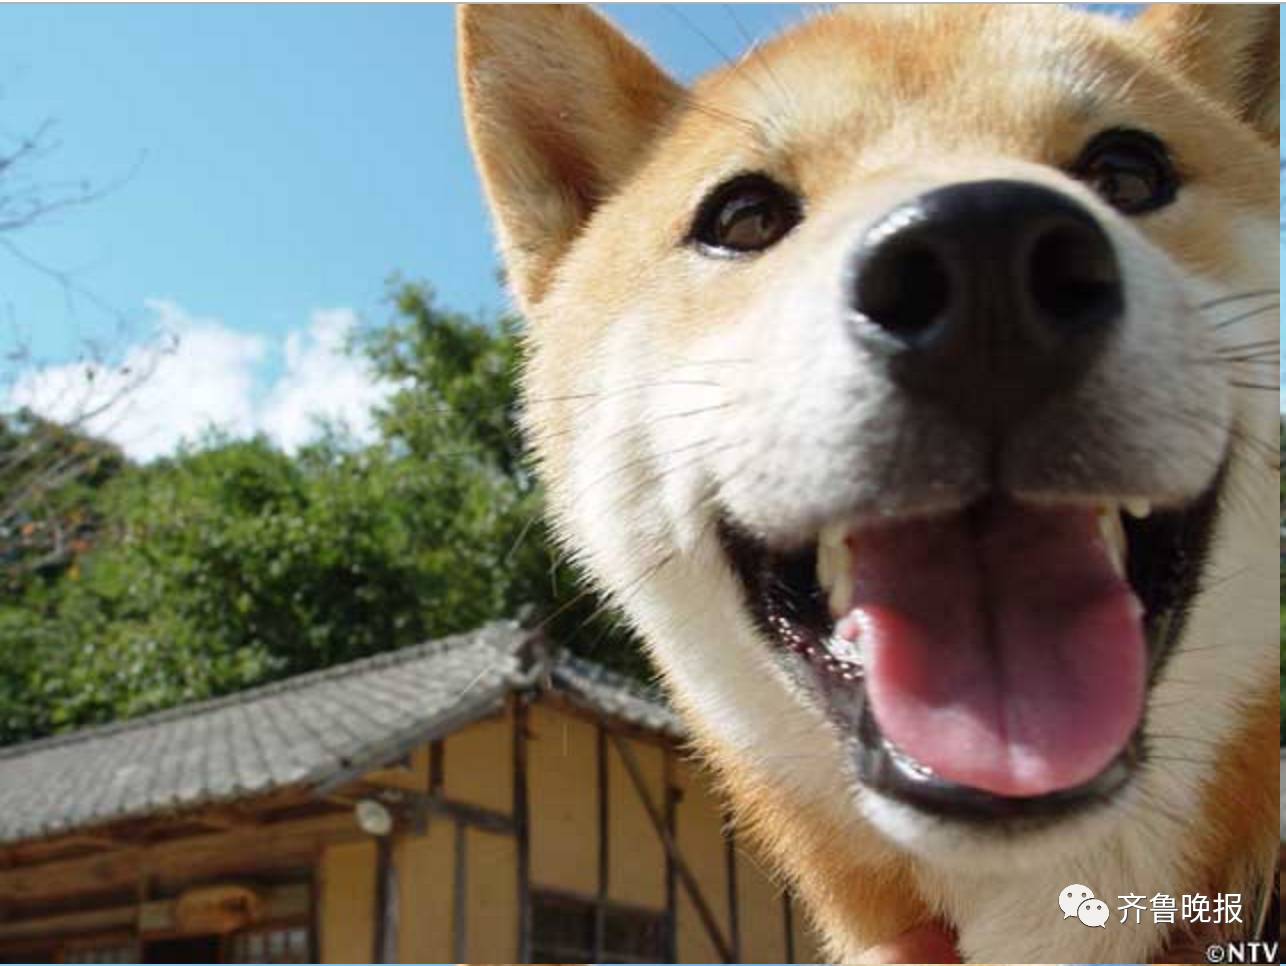 16歲表情包柴犬北登去世 日本網民集體哀悼